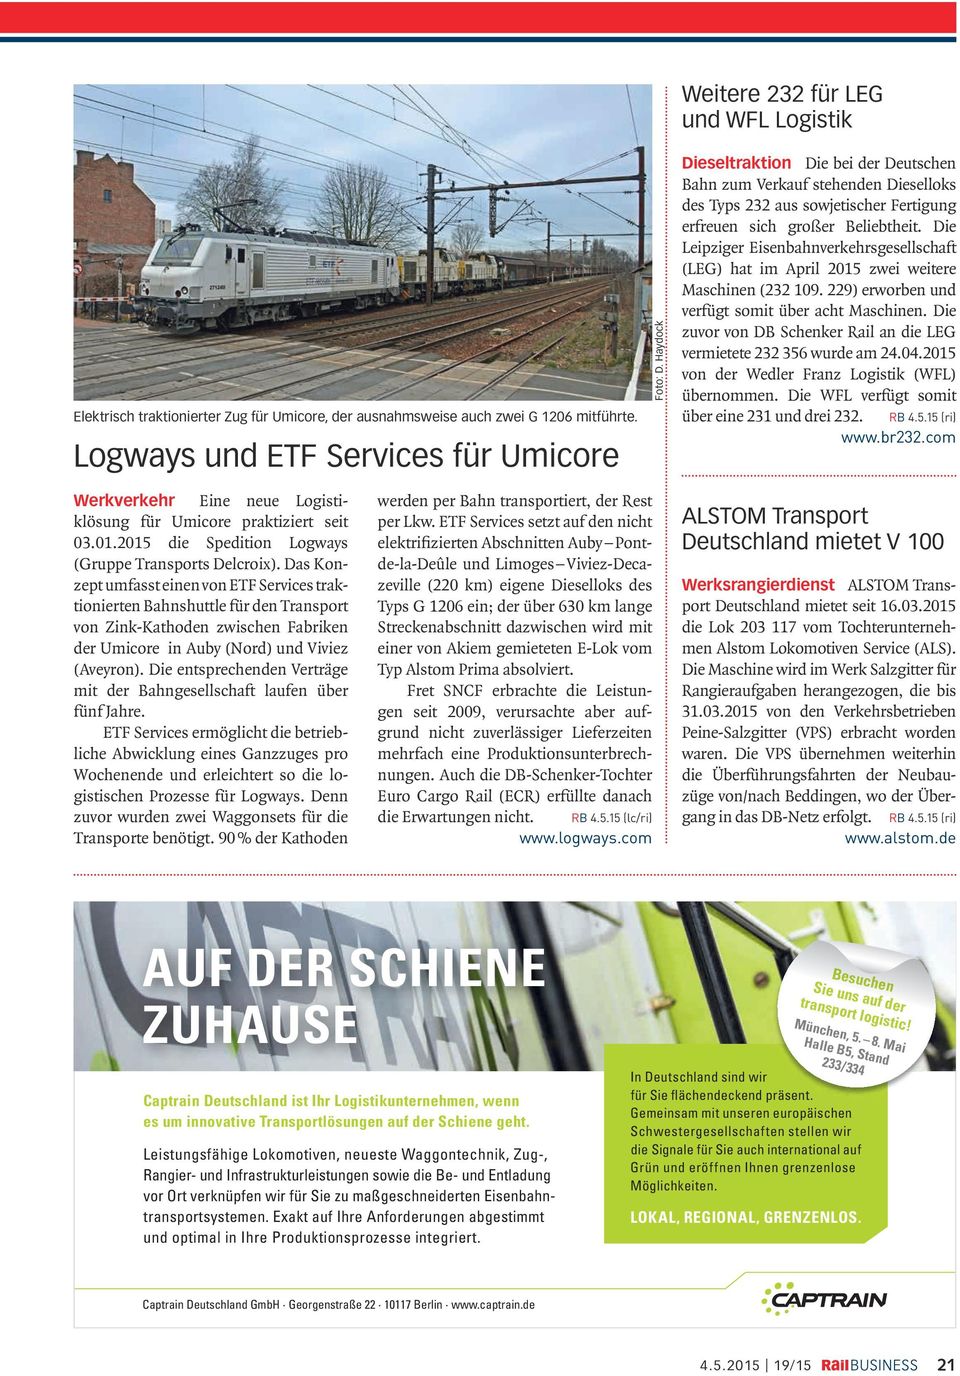 Die Leipziger Eisenbahnverkehrsgesellschaft (LEG) hat im April 2015 zwei weitere Maschinen (232 109. 229) erworben und verfügt somit über acht Maschinen.